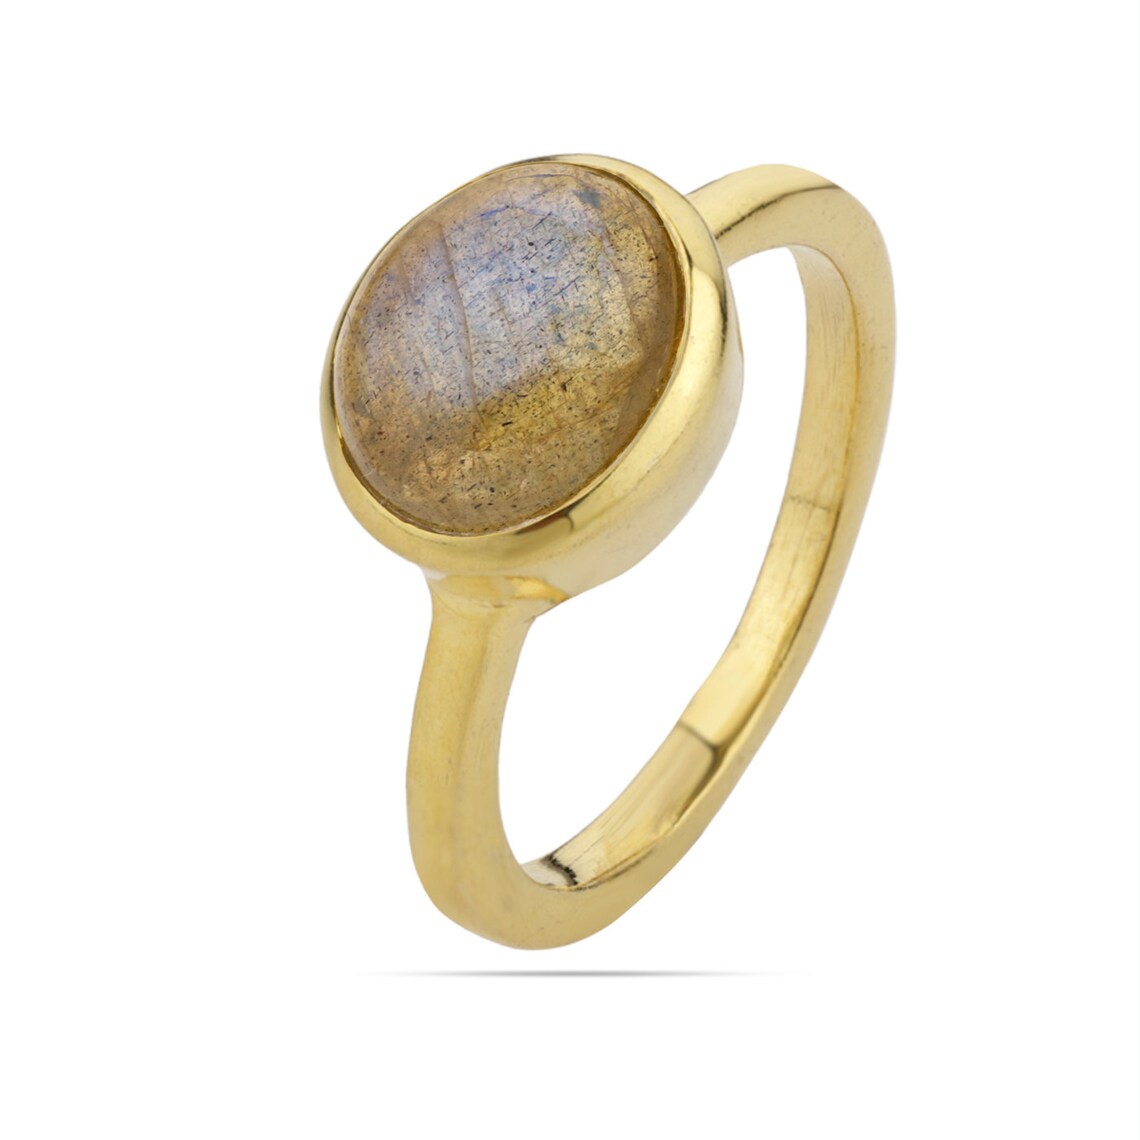 Labradorite Oval Ring, Blue Labradorite Gemstone Ring - Stacking Ring- Delicate Ring - Labradorite Gold Ring